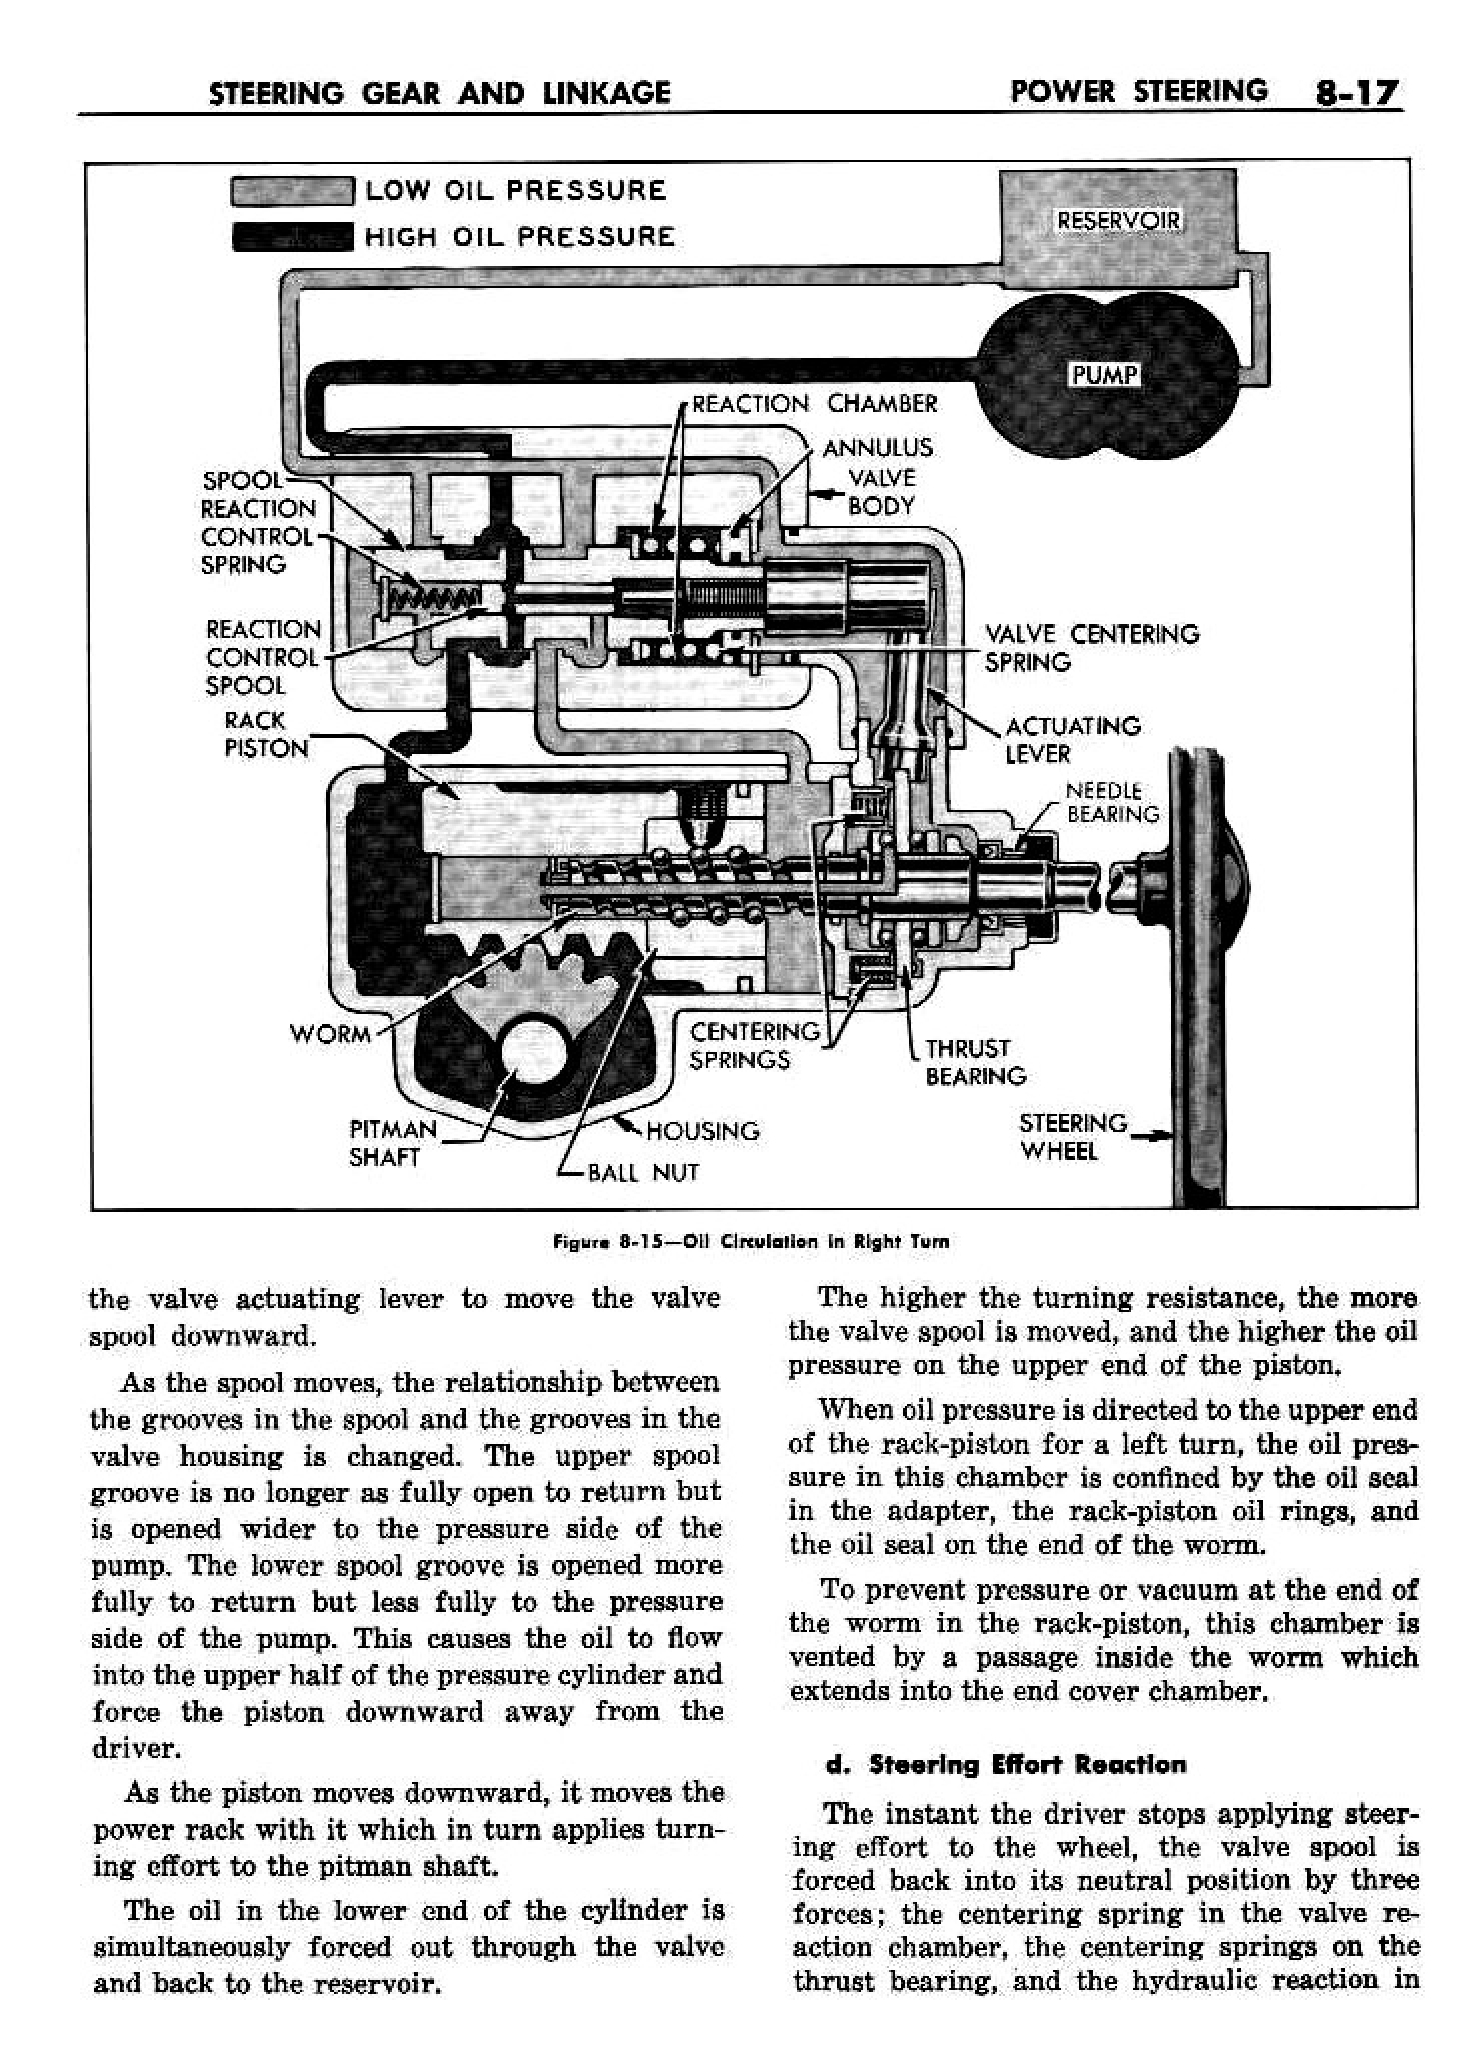 n_09 1958 Buick Shop Manual - Steering_17.jpg